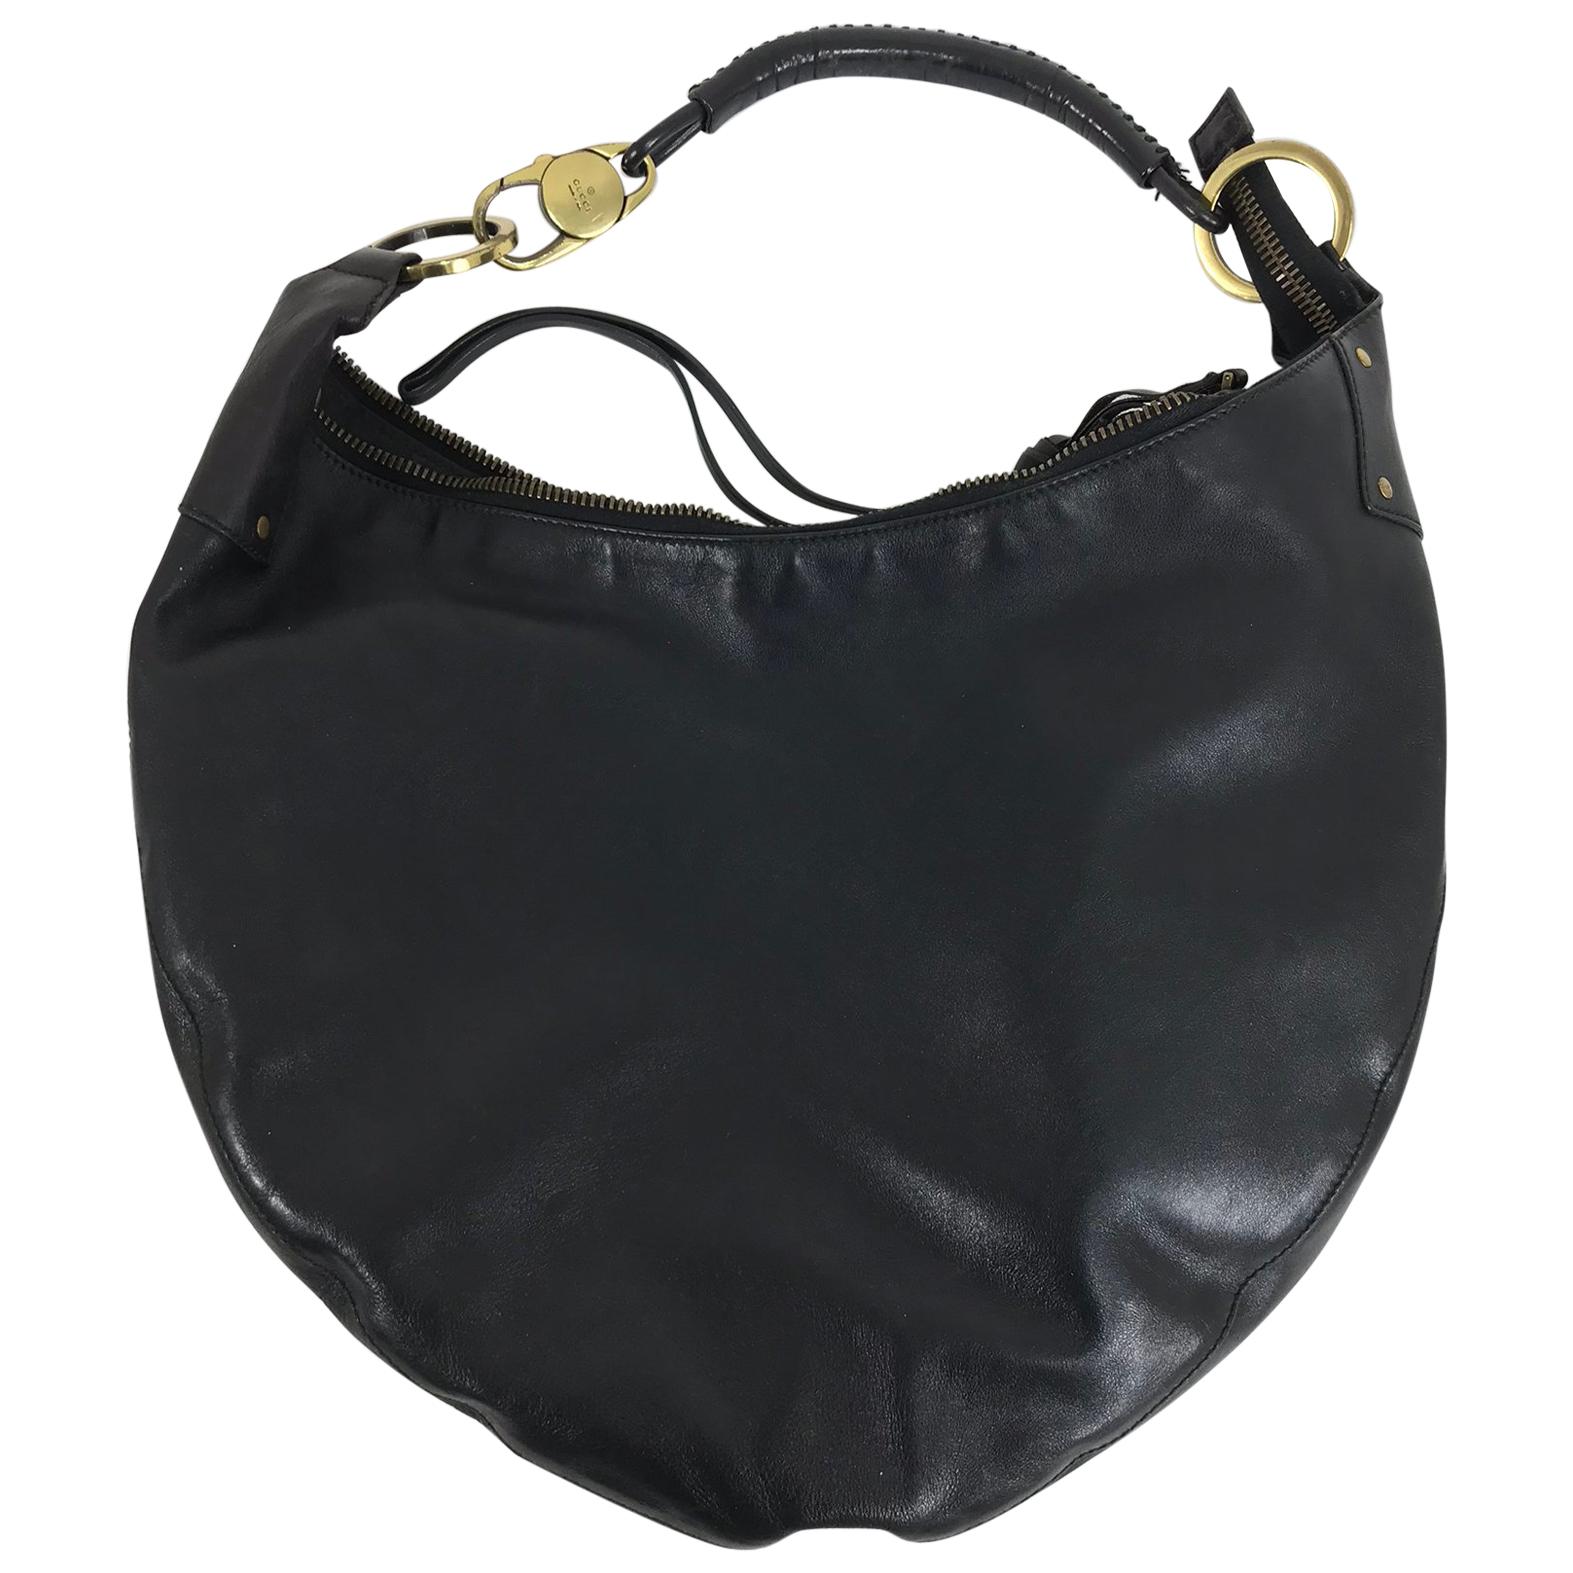 Gucci Black Leather shoulder bag with gold hardware